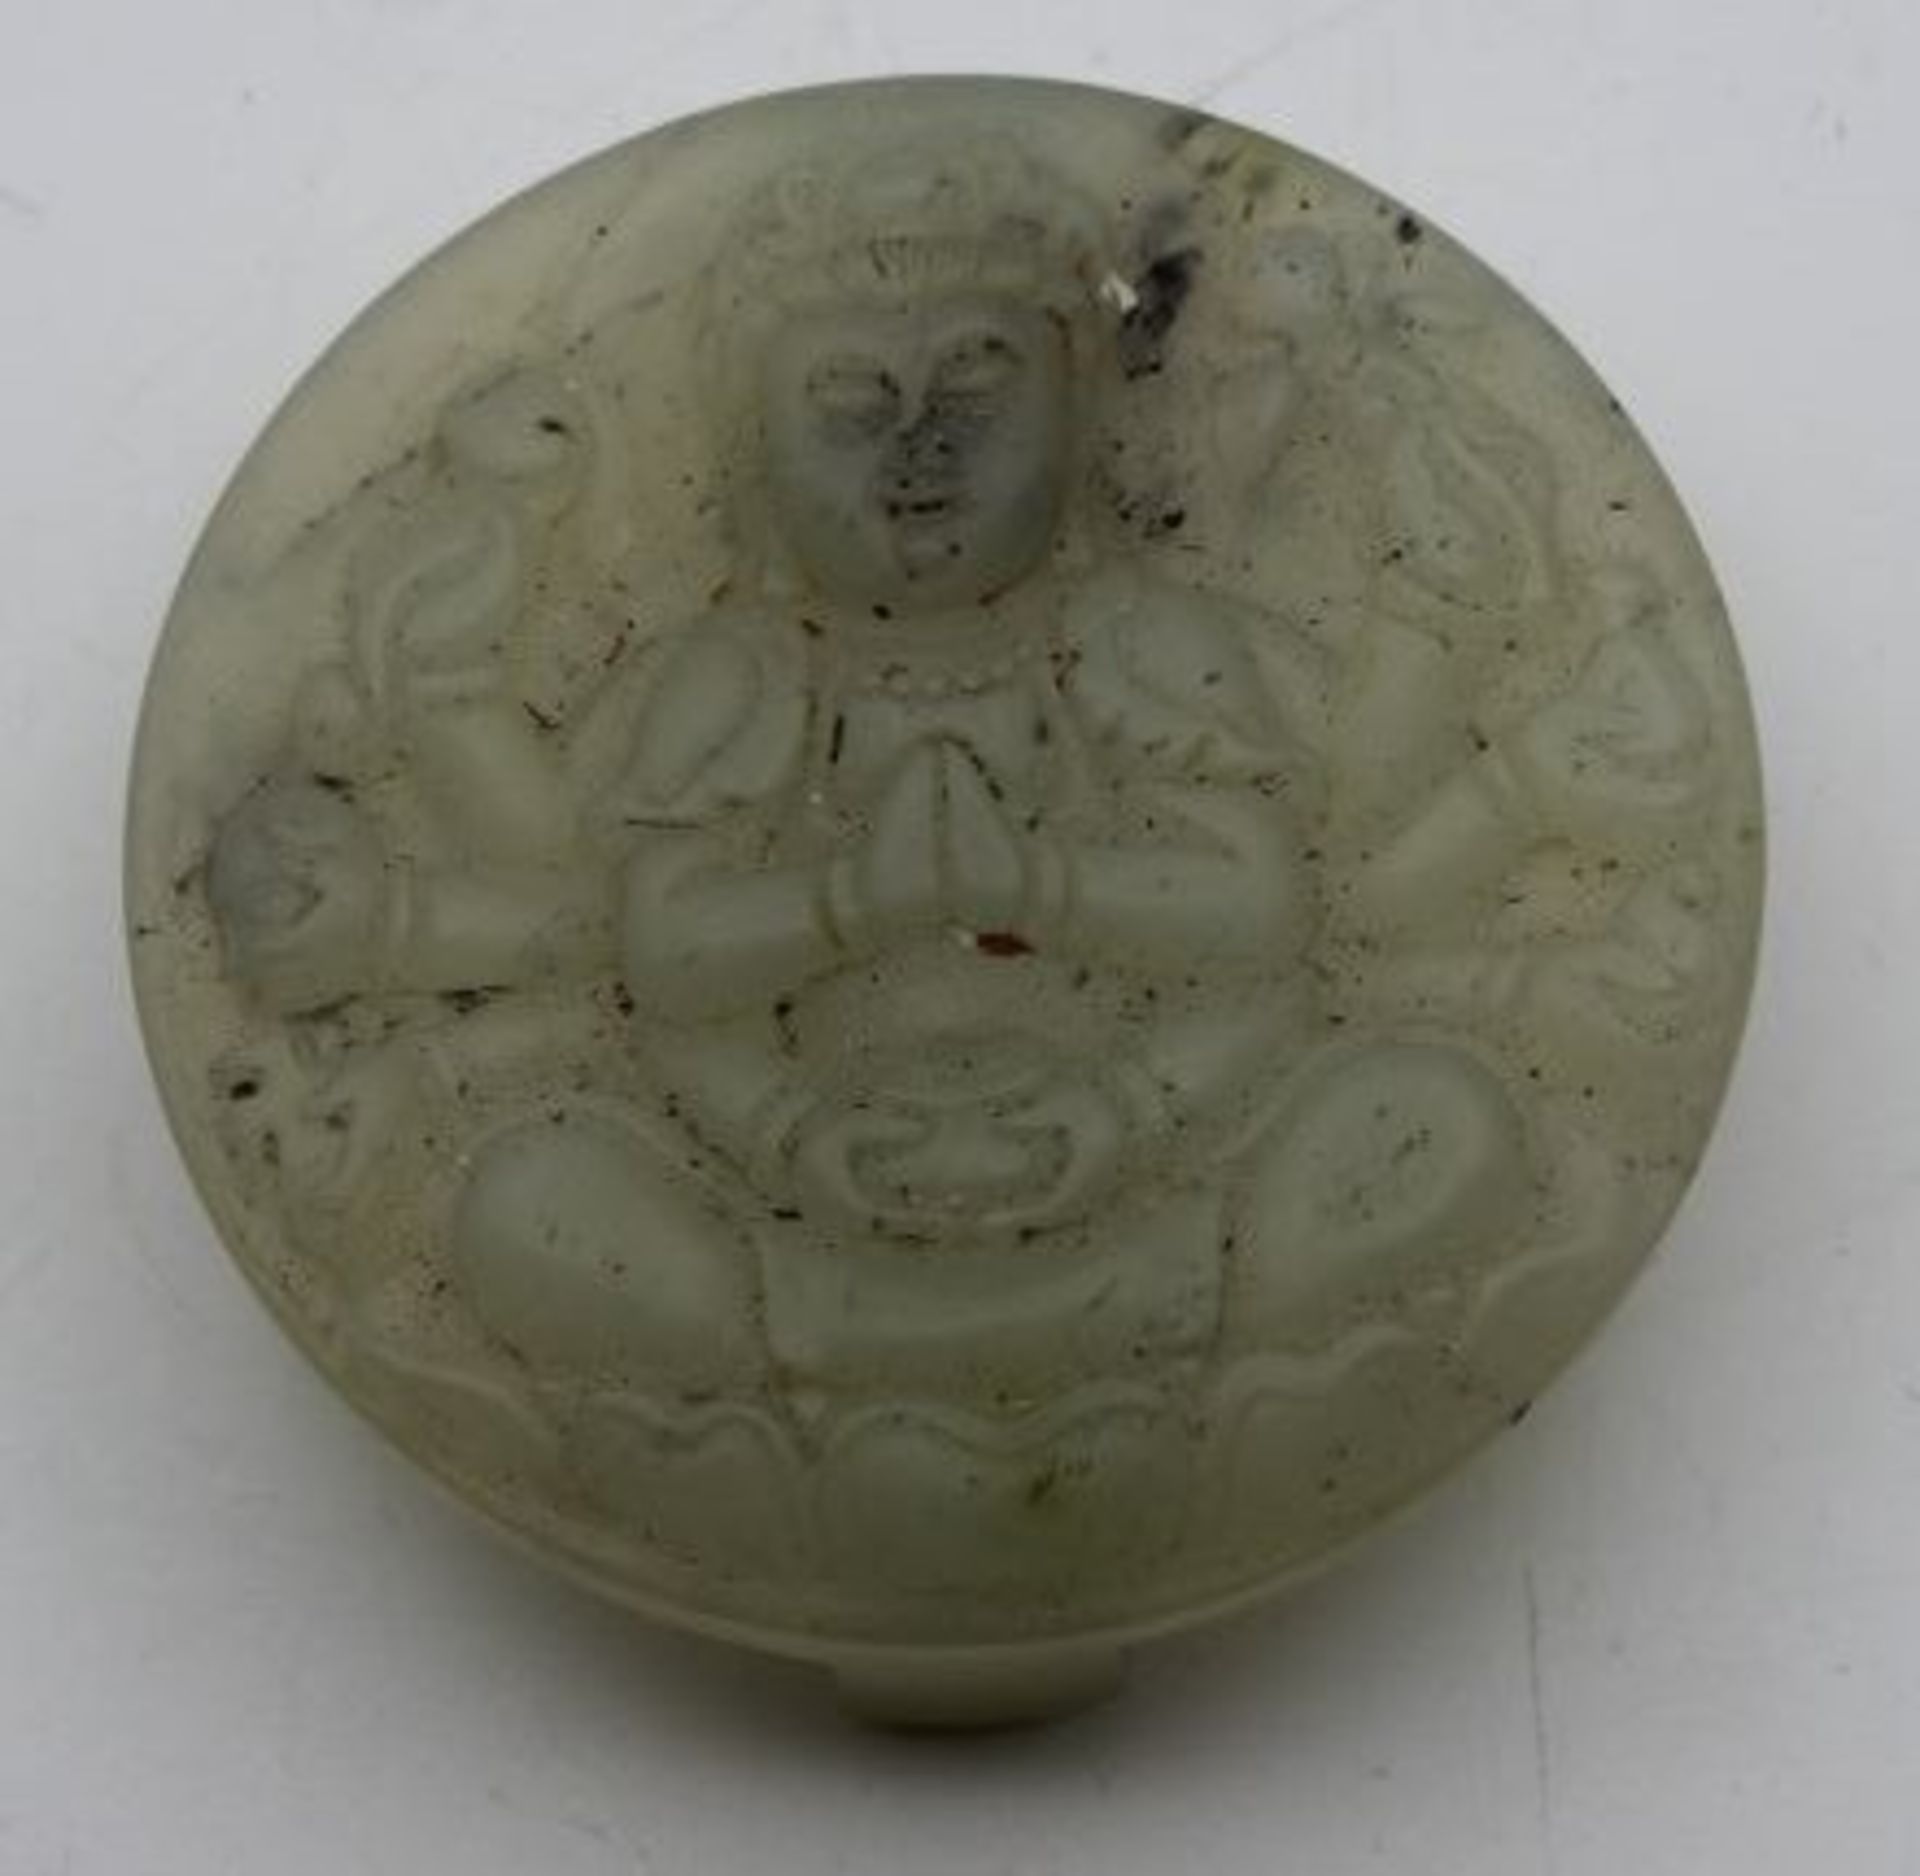 wohl Gürtelschnalle, Jade ?, China, Buddha-Darstellung, D-5,6cm.